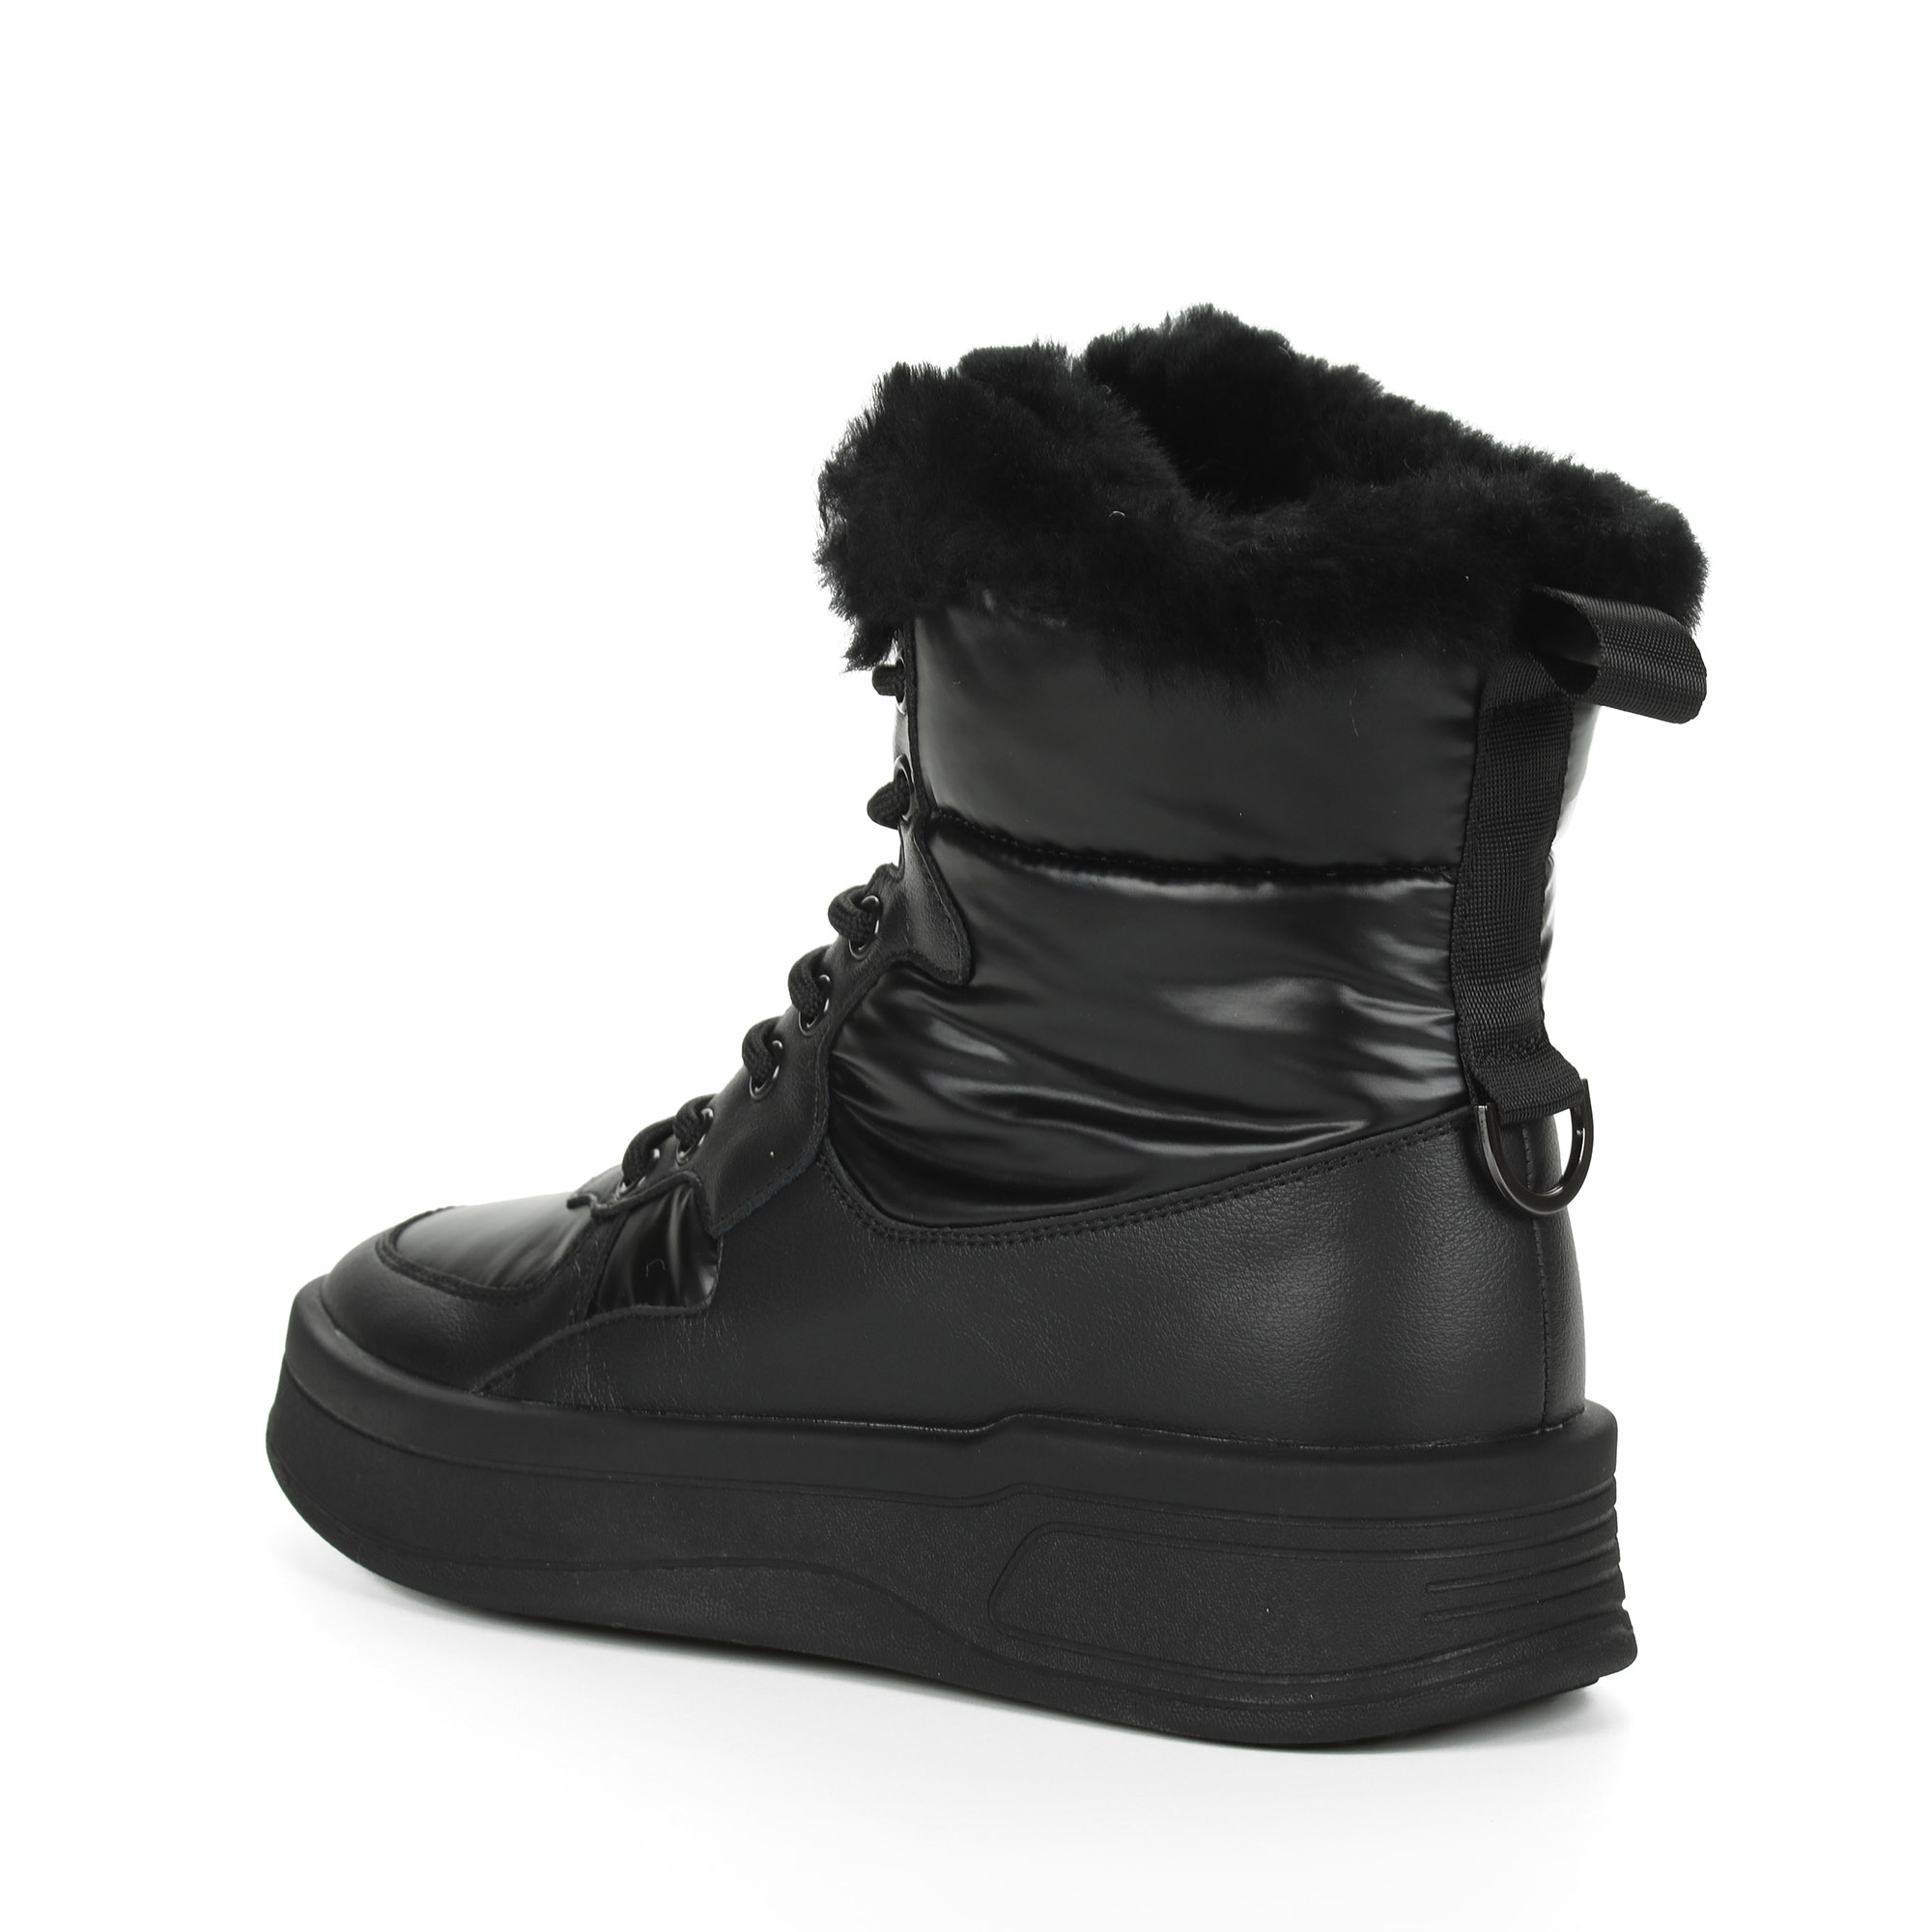 Черные высокие кроссовки из комбинированных материалов смеховой опушкой на подкладке из натуральной шерсти на утолщенной платформе Respect, размер 40, цвет черный - фото 5